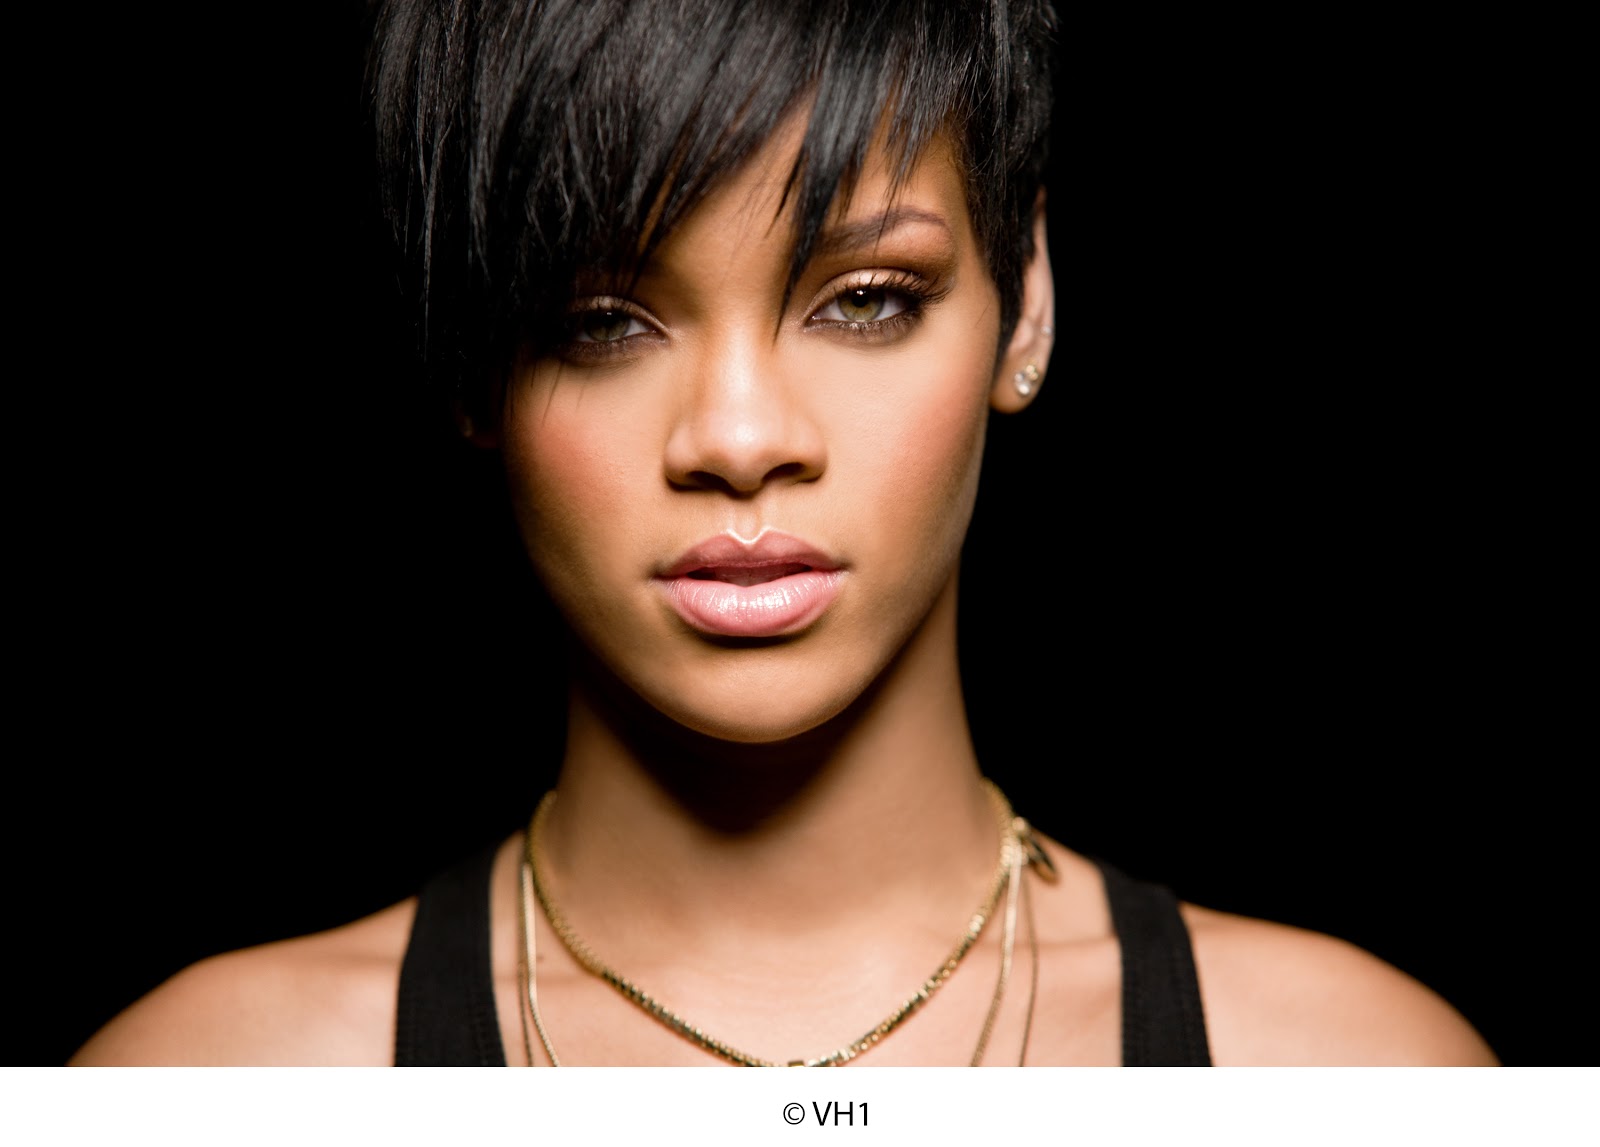 http://4.bp.blogspot.com/-oCIs6fRPbFE/UN6yNlAynzI/AAAAAAAAF0o/y9aH-cDBW3M/s1600/Fierce_Rihanna.jpg